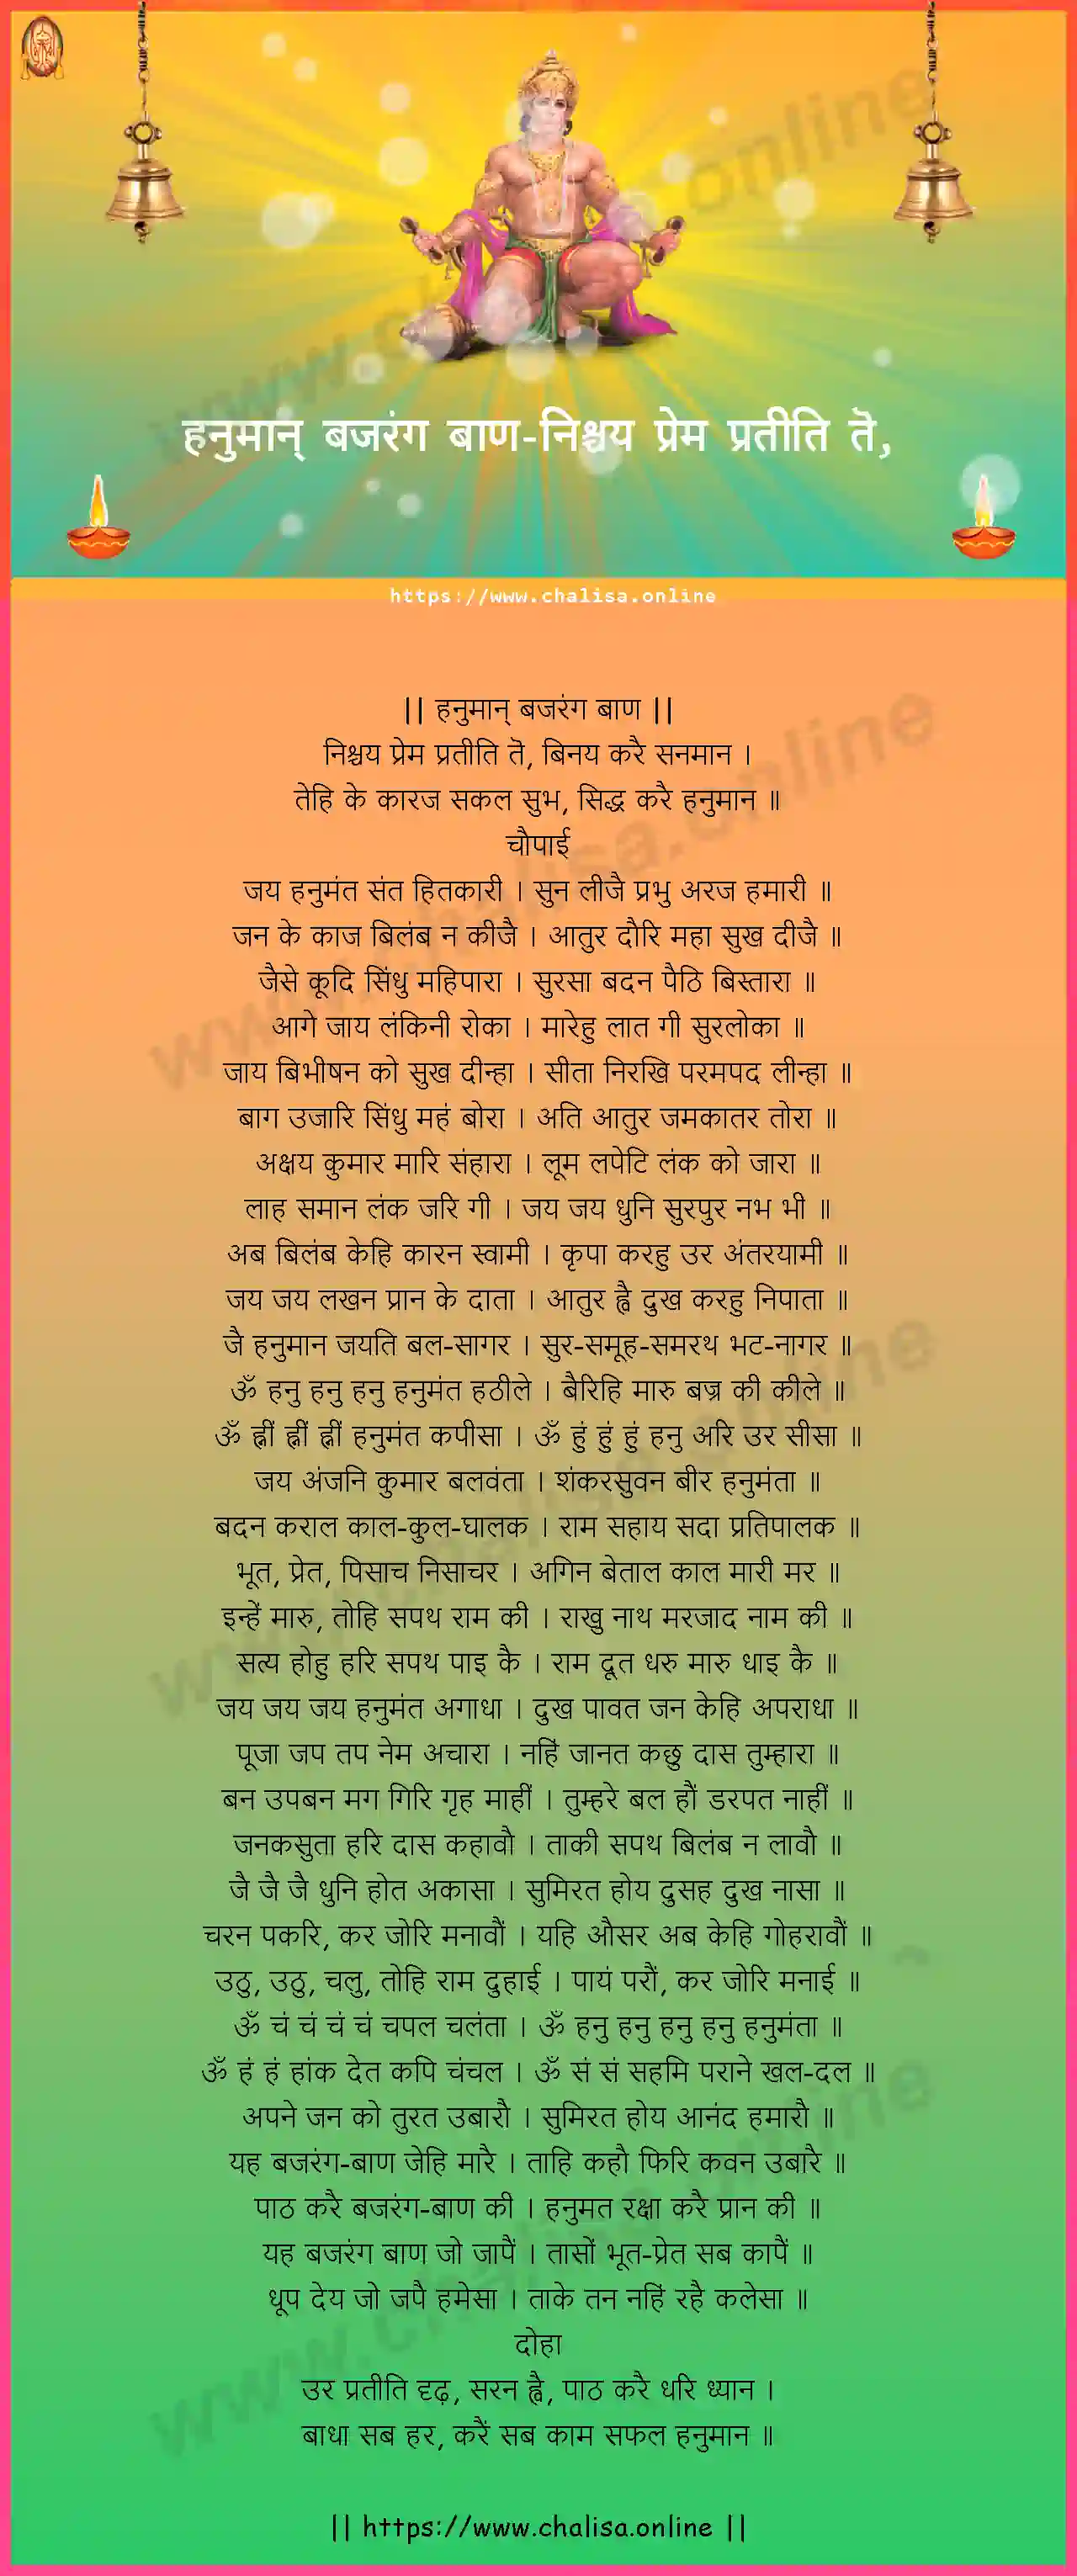 nischaya-prema-hanuman-bajrang-baan-marathi-marathi-lyrics-download